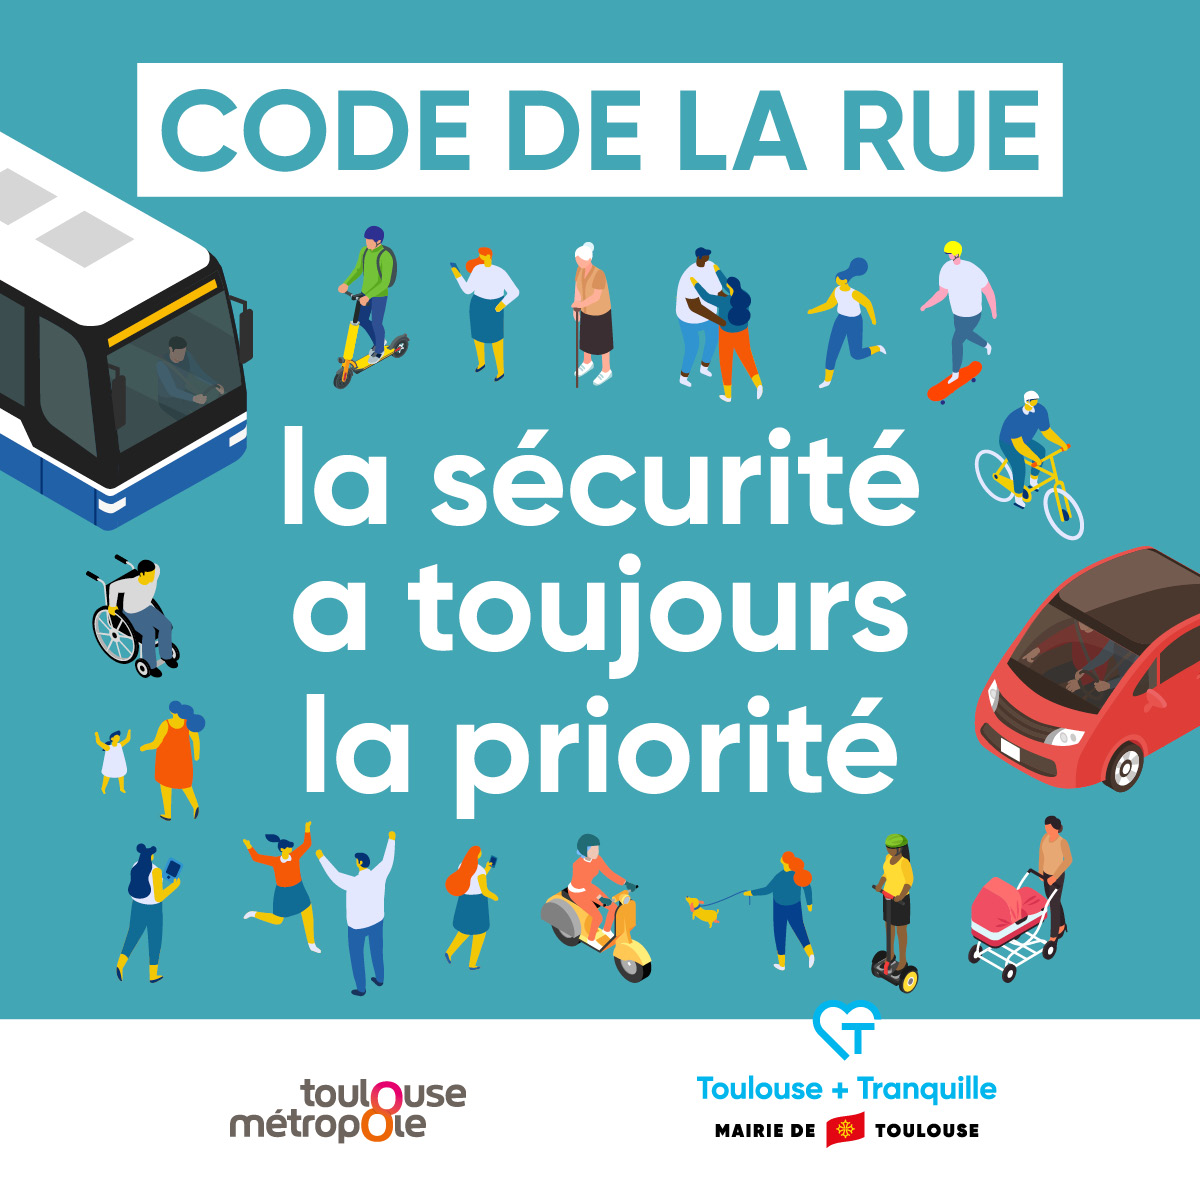 Pour que chacun puisse se déplacer en toute sécurité dans les rues de Toulouse, la mairie a élaboré un Code de la rue qui rappelle les règles de partage de l’espace public. Découvrez ce code dans notre guide 🔗 bit.ly/CodeDeLaRue